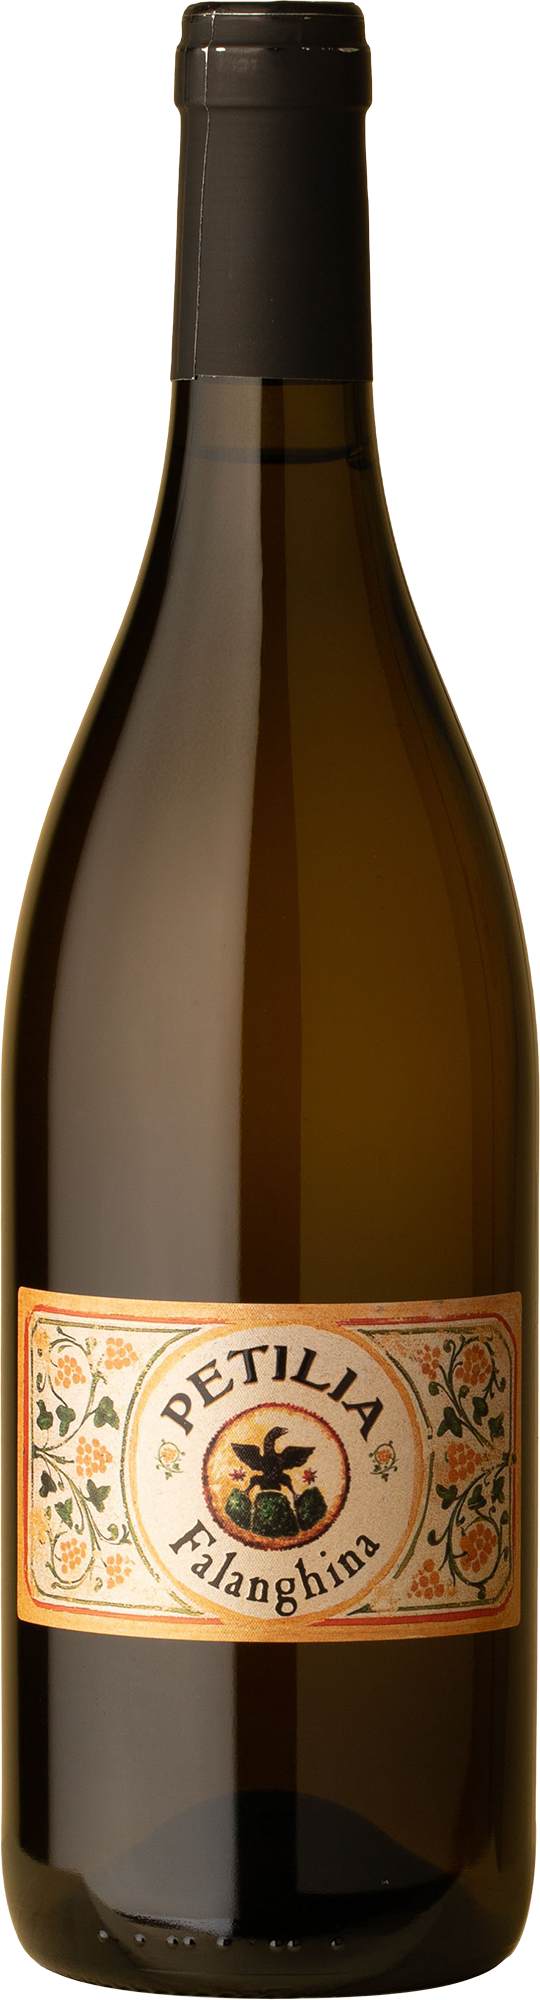 Petilia - Falanghina 2019 White Wine